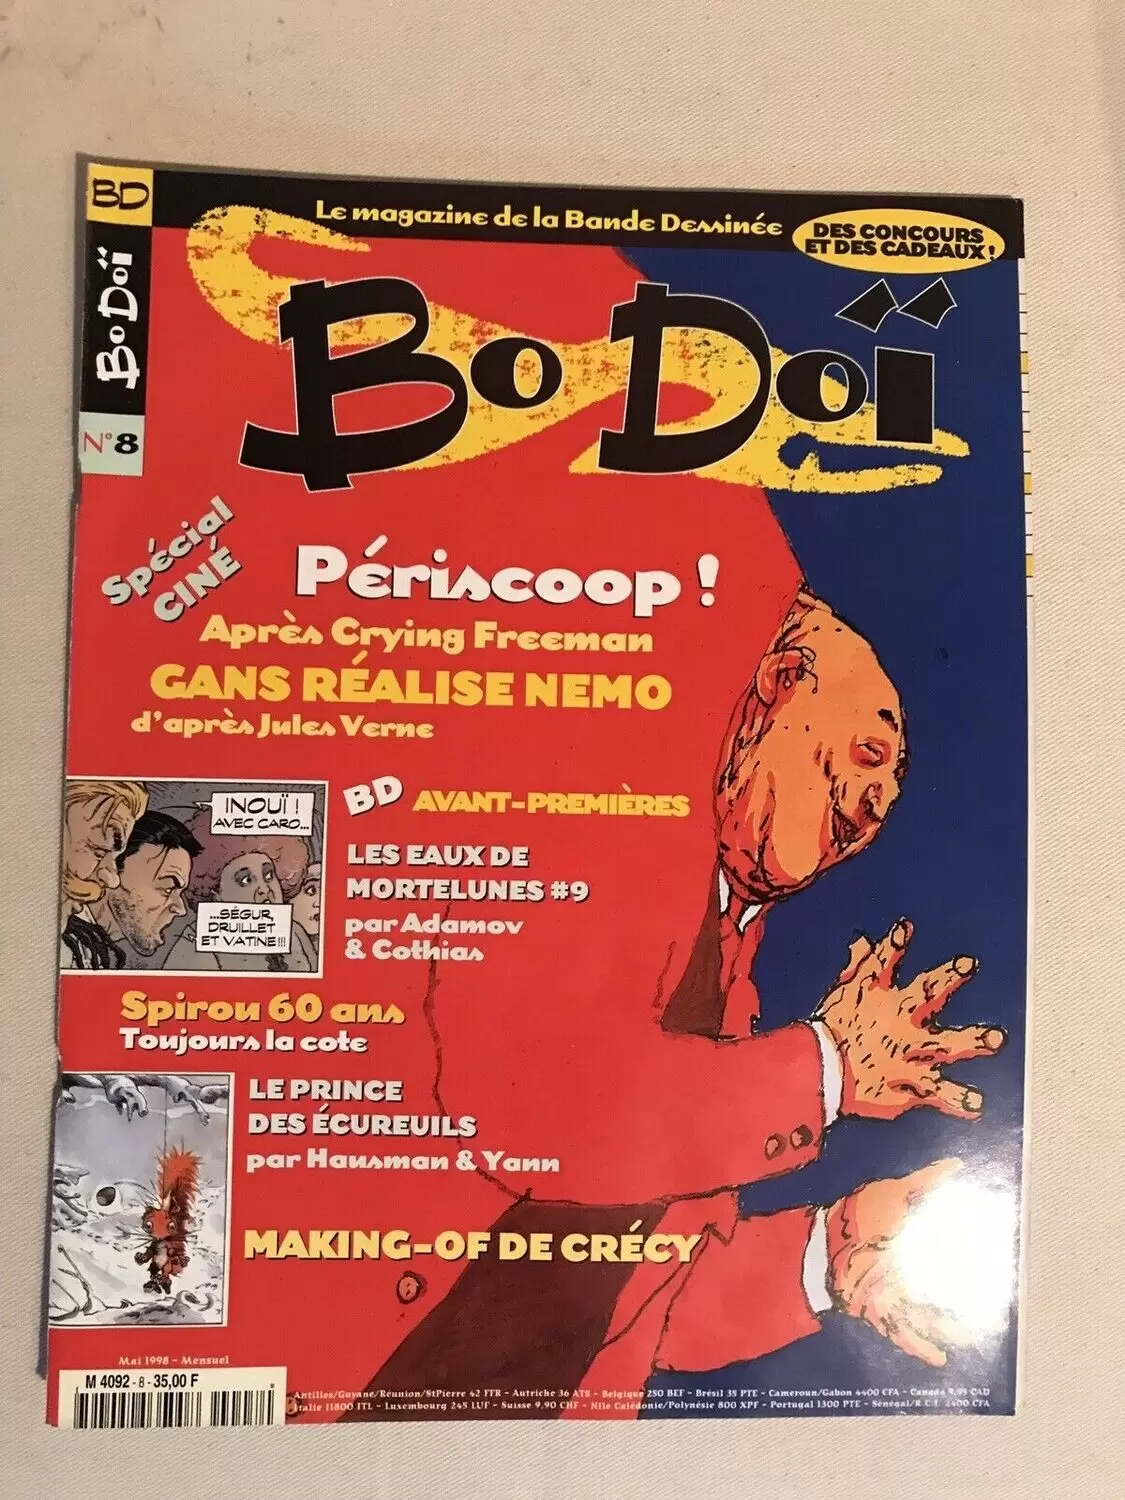 BoDoï - Periscoop